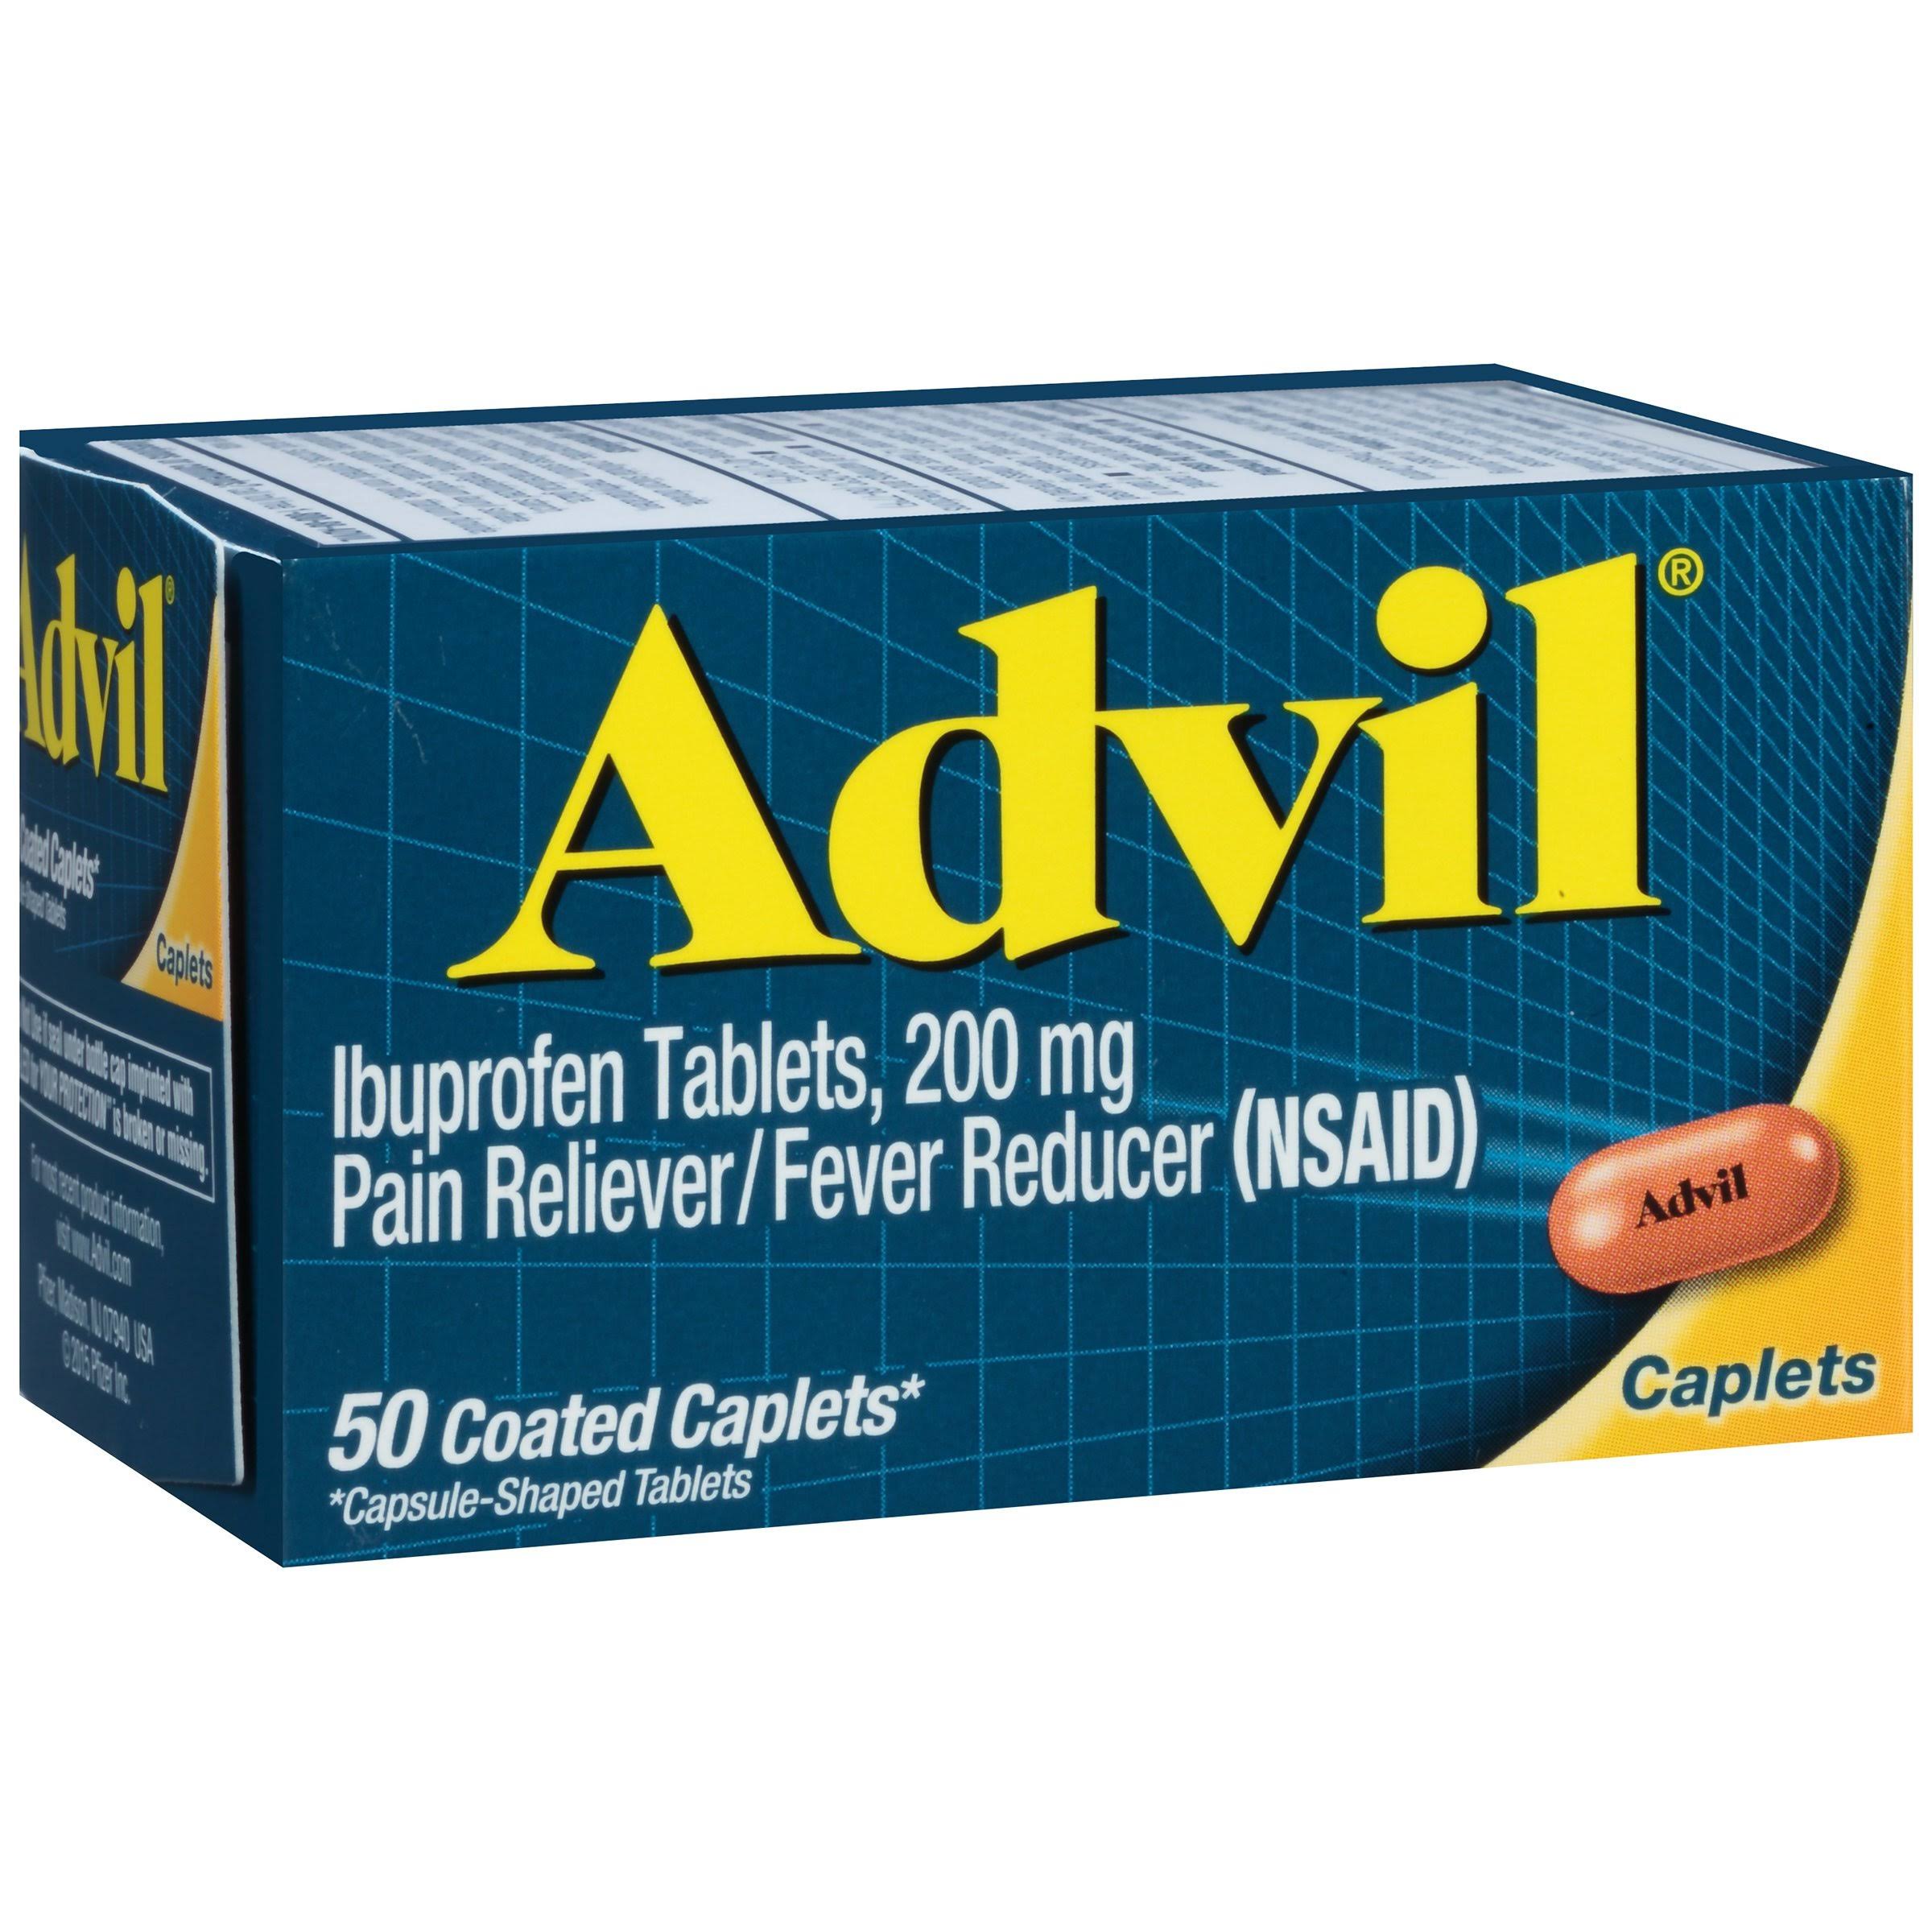 Advil Caplets